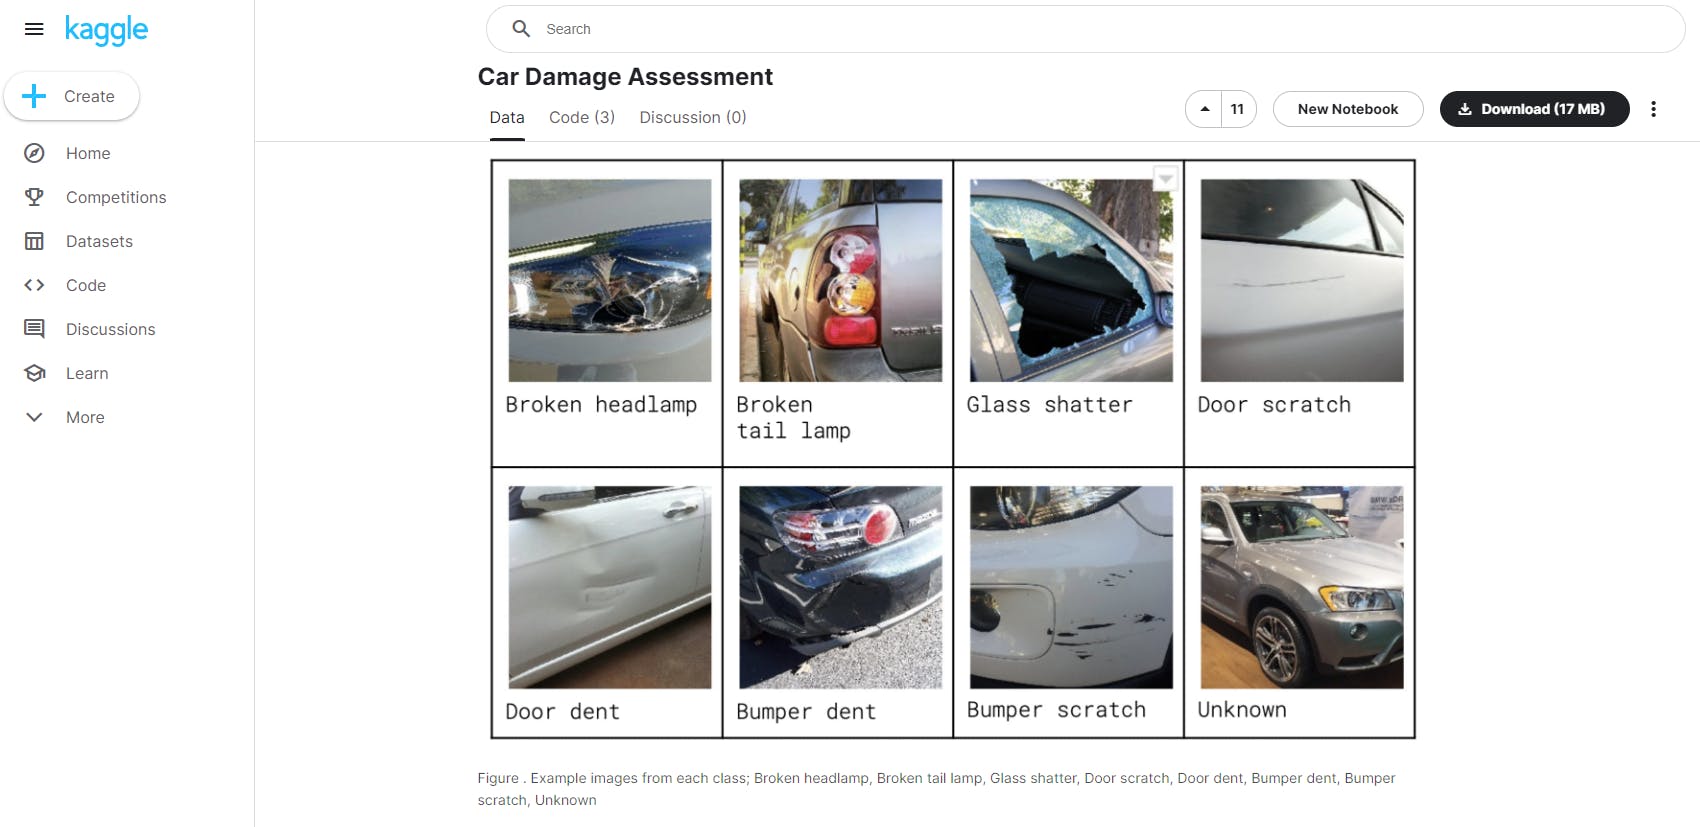 Car damage assessment dataset.